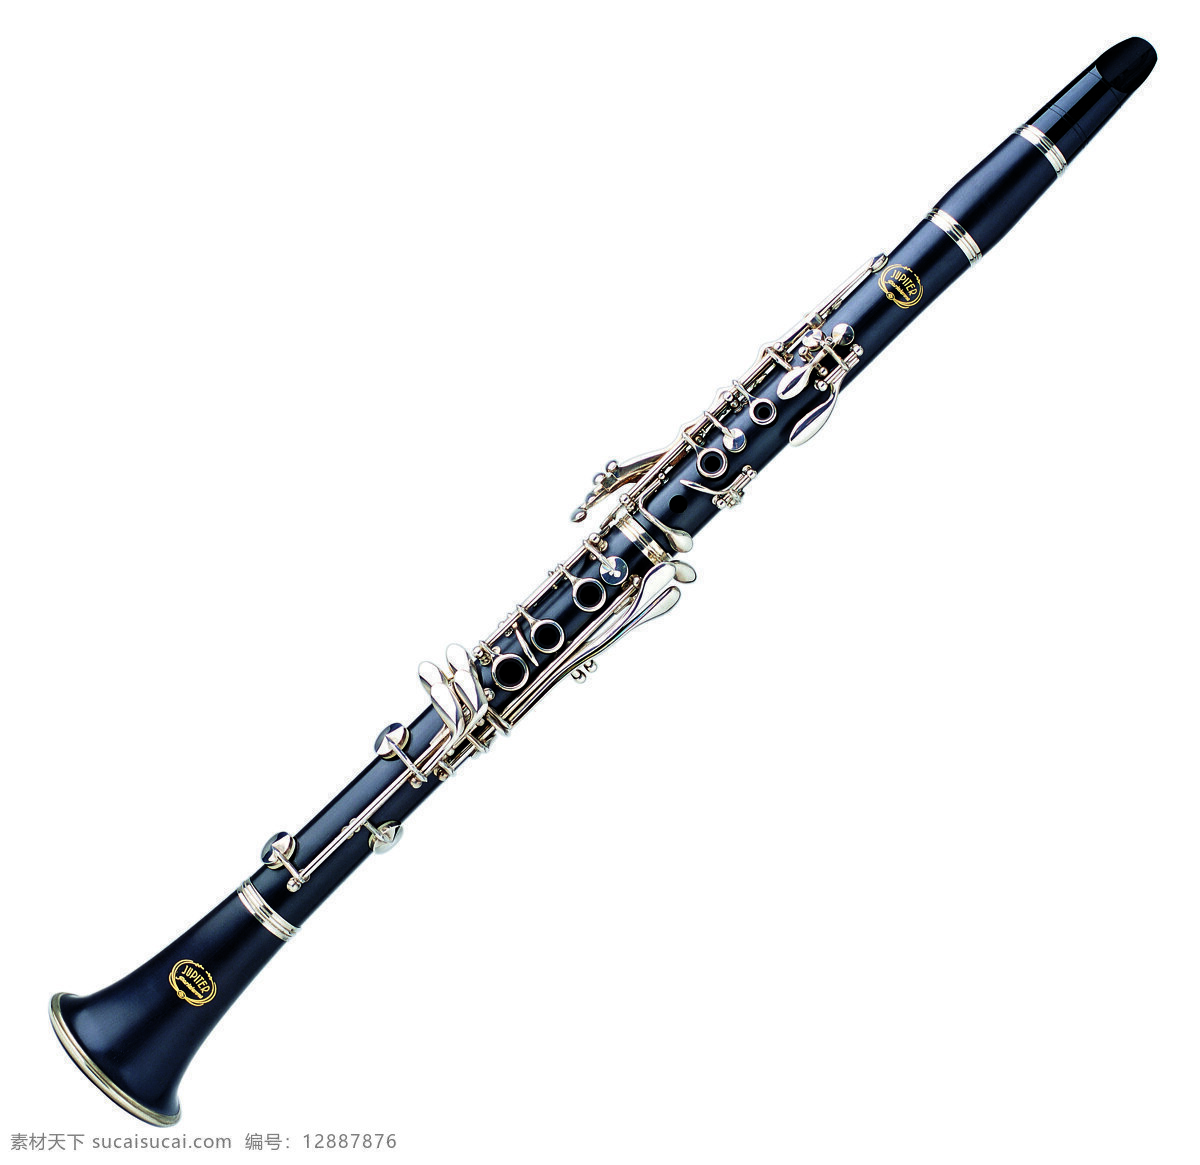 西式乐器 萨克斯 乐器 长笛 管笛 音乐 演唱 演奏 舞蹈音乐 文化艺术 音乐器材 音乐器械